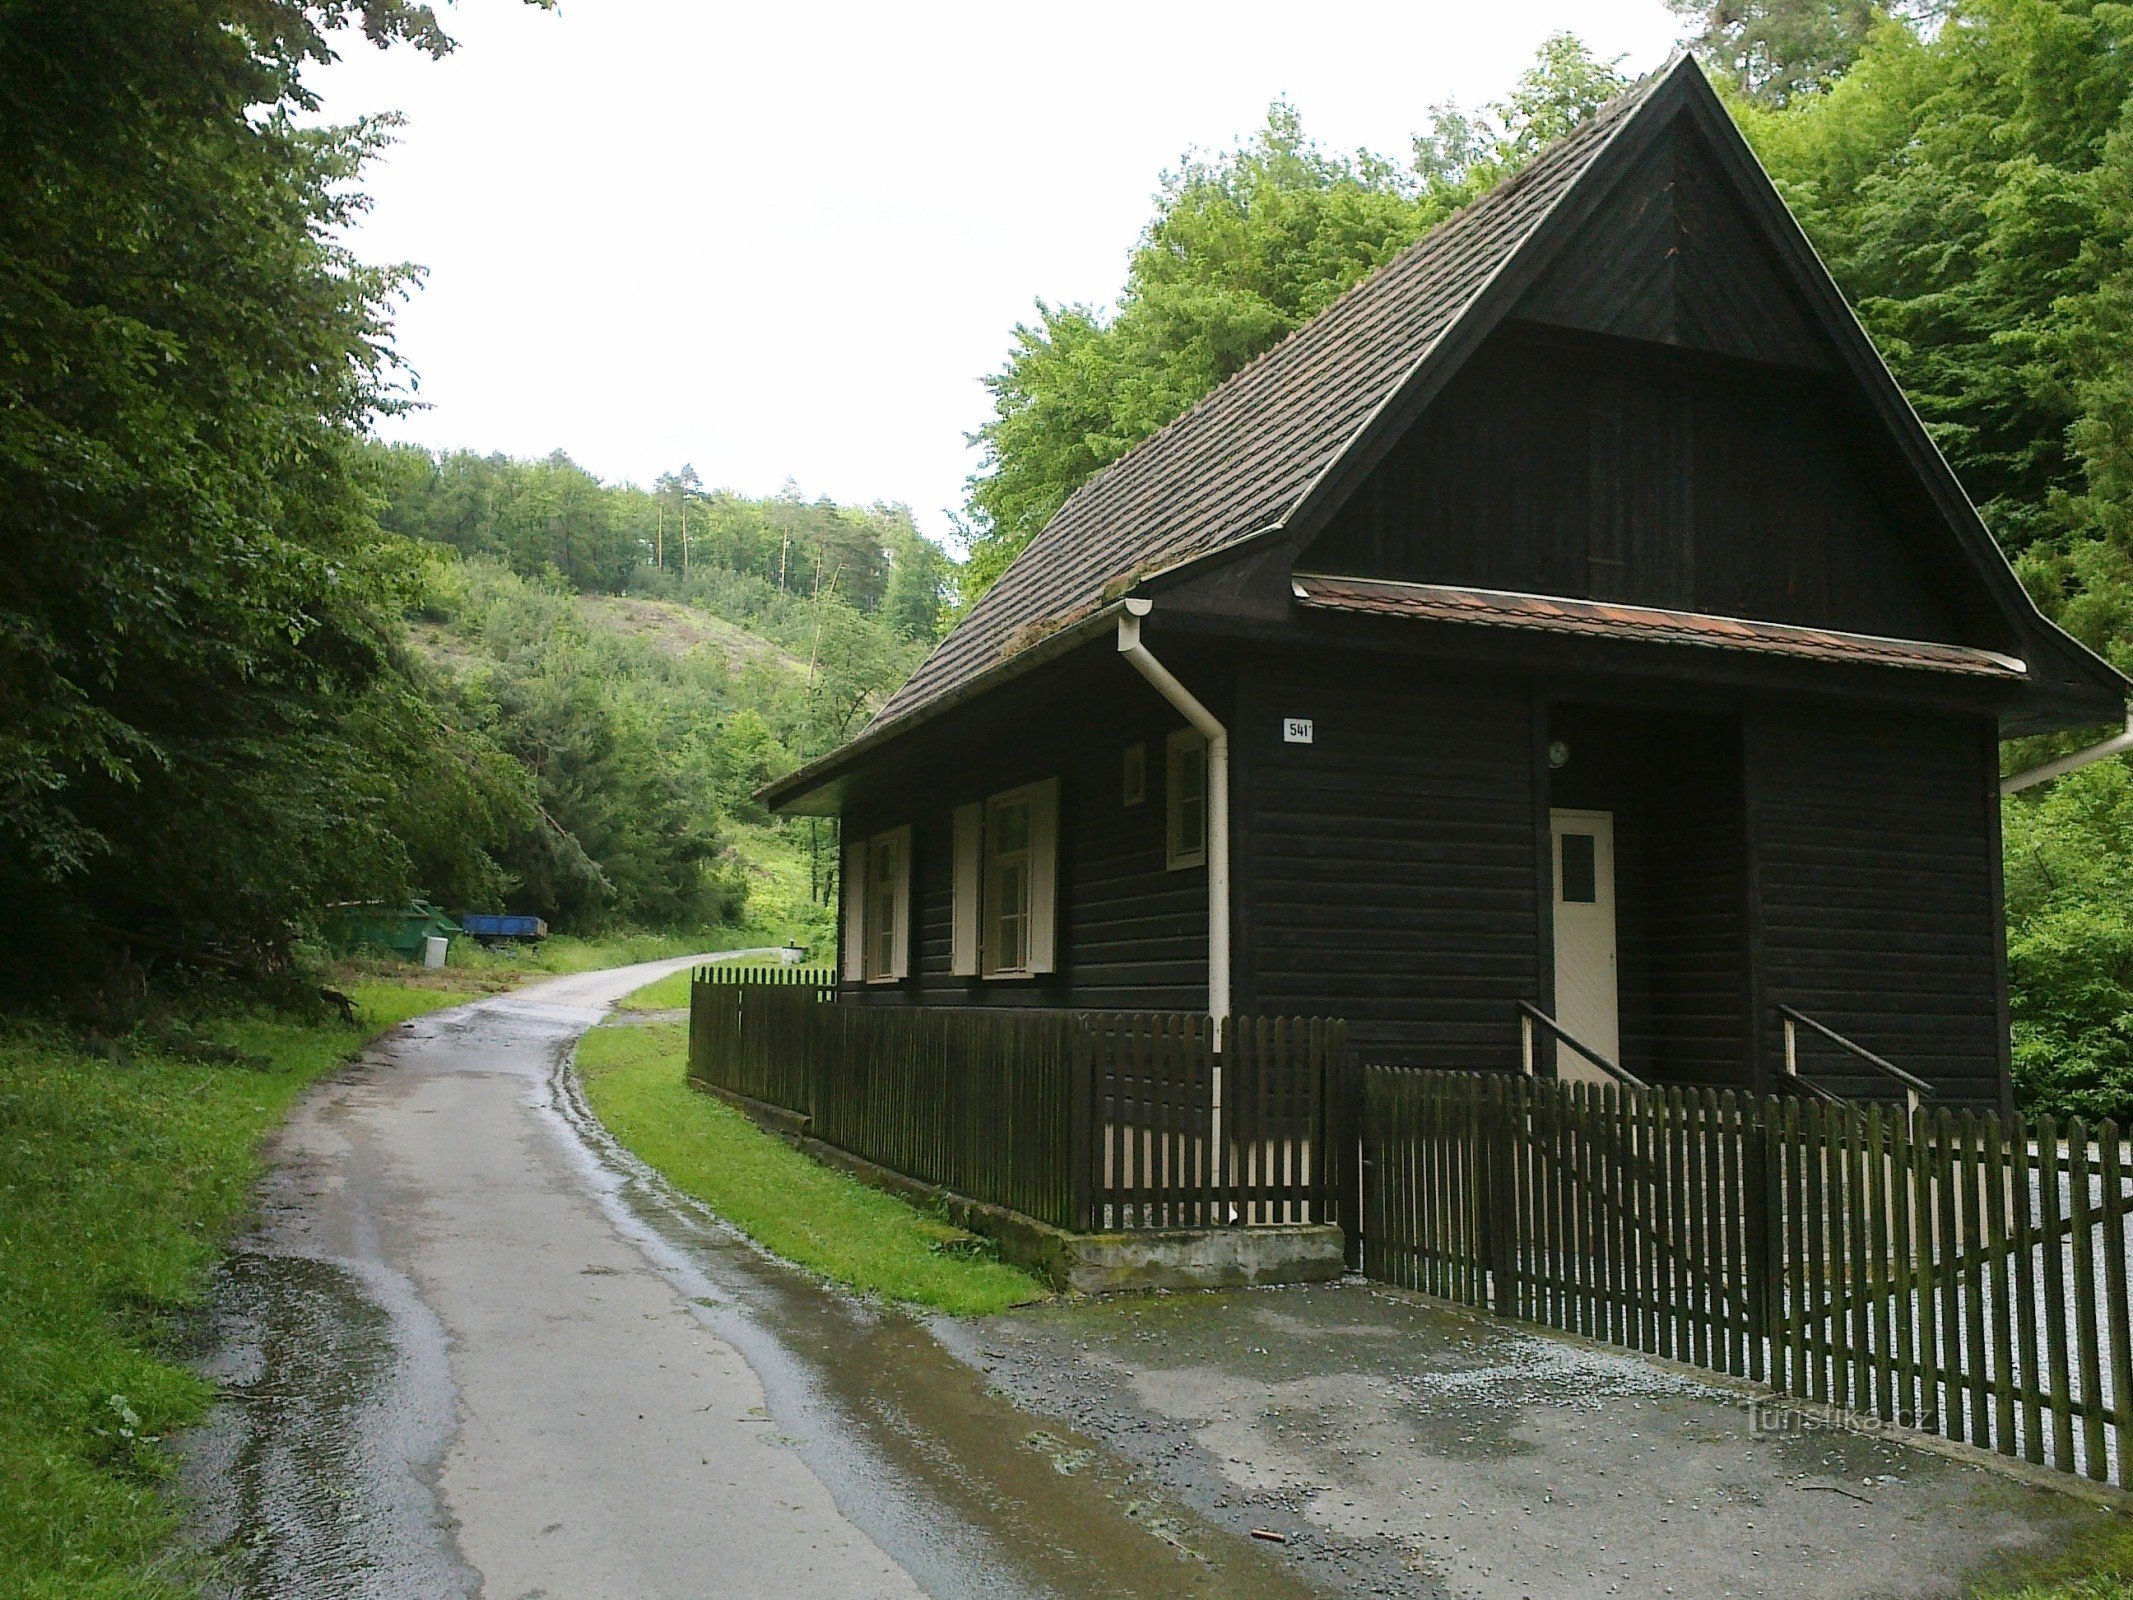 ŠLP vadászház a völgy elején